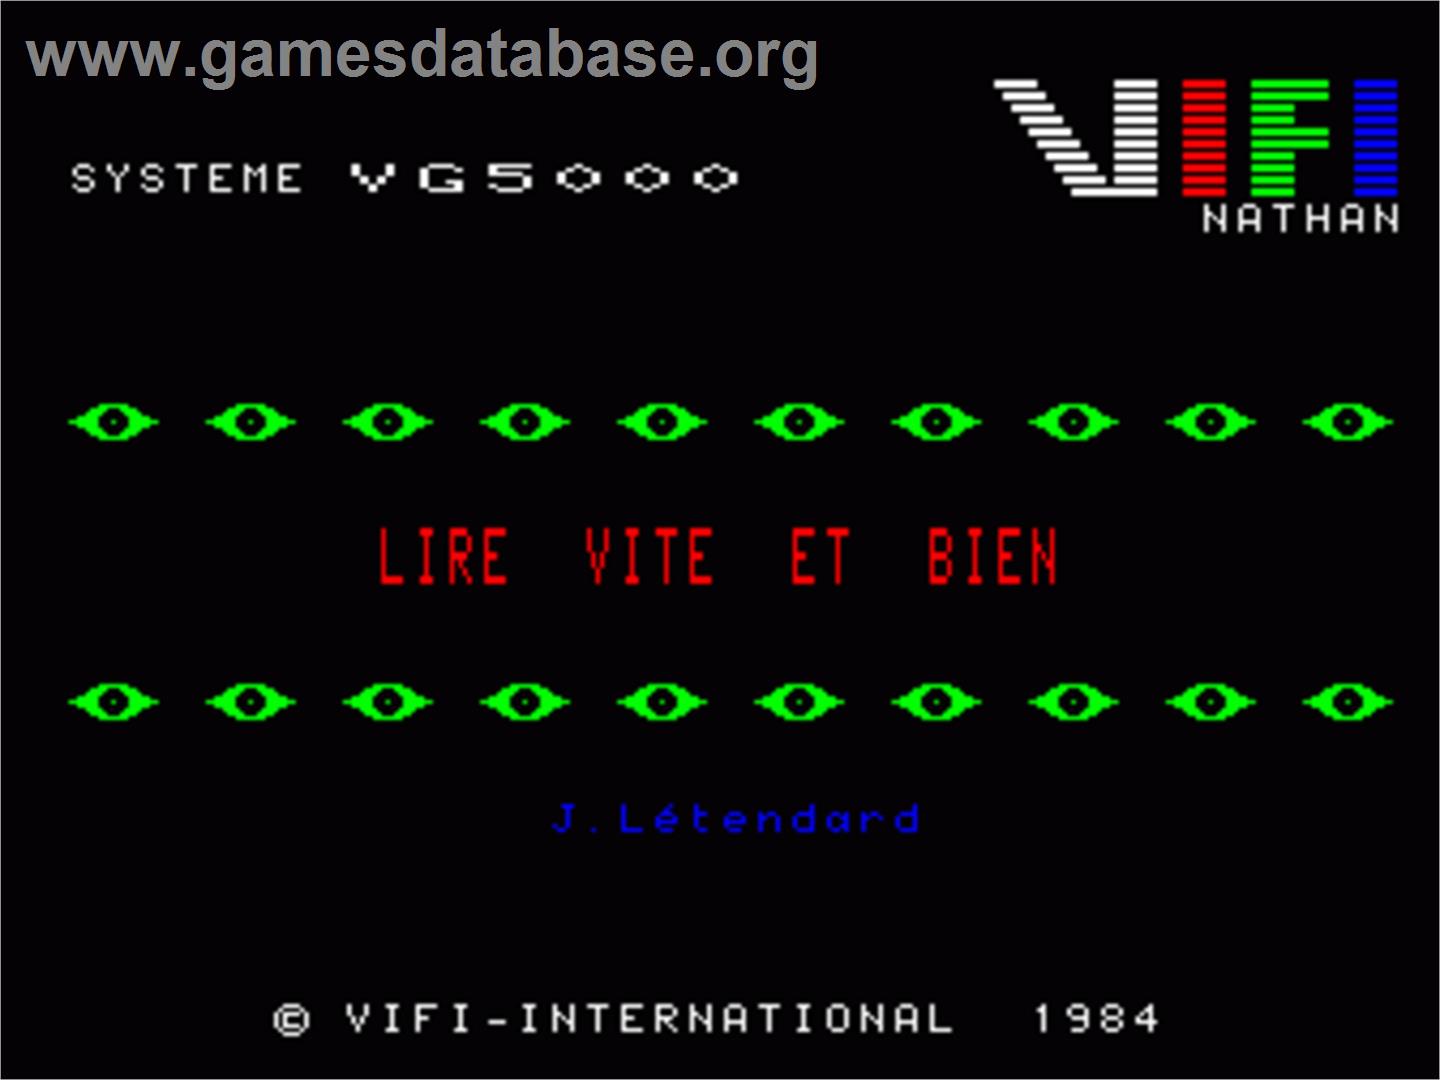 Lire Vite Et Bien - Philips VG 5000 - Artwork - In Game